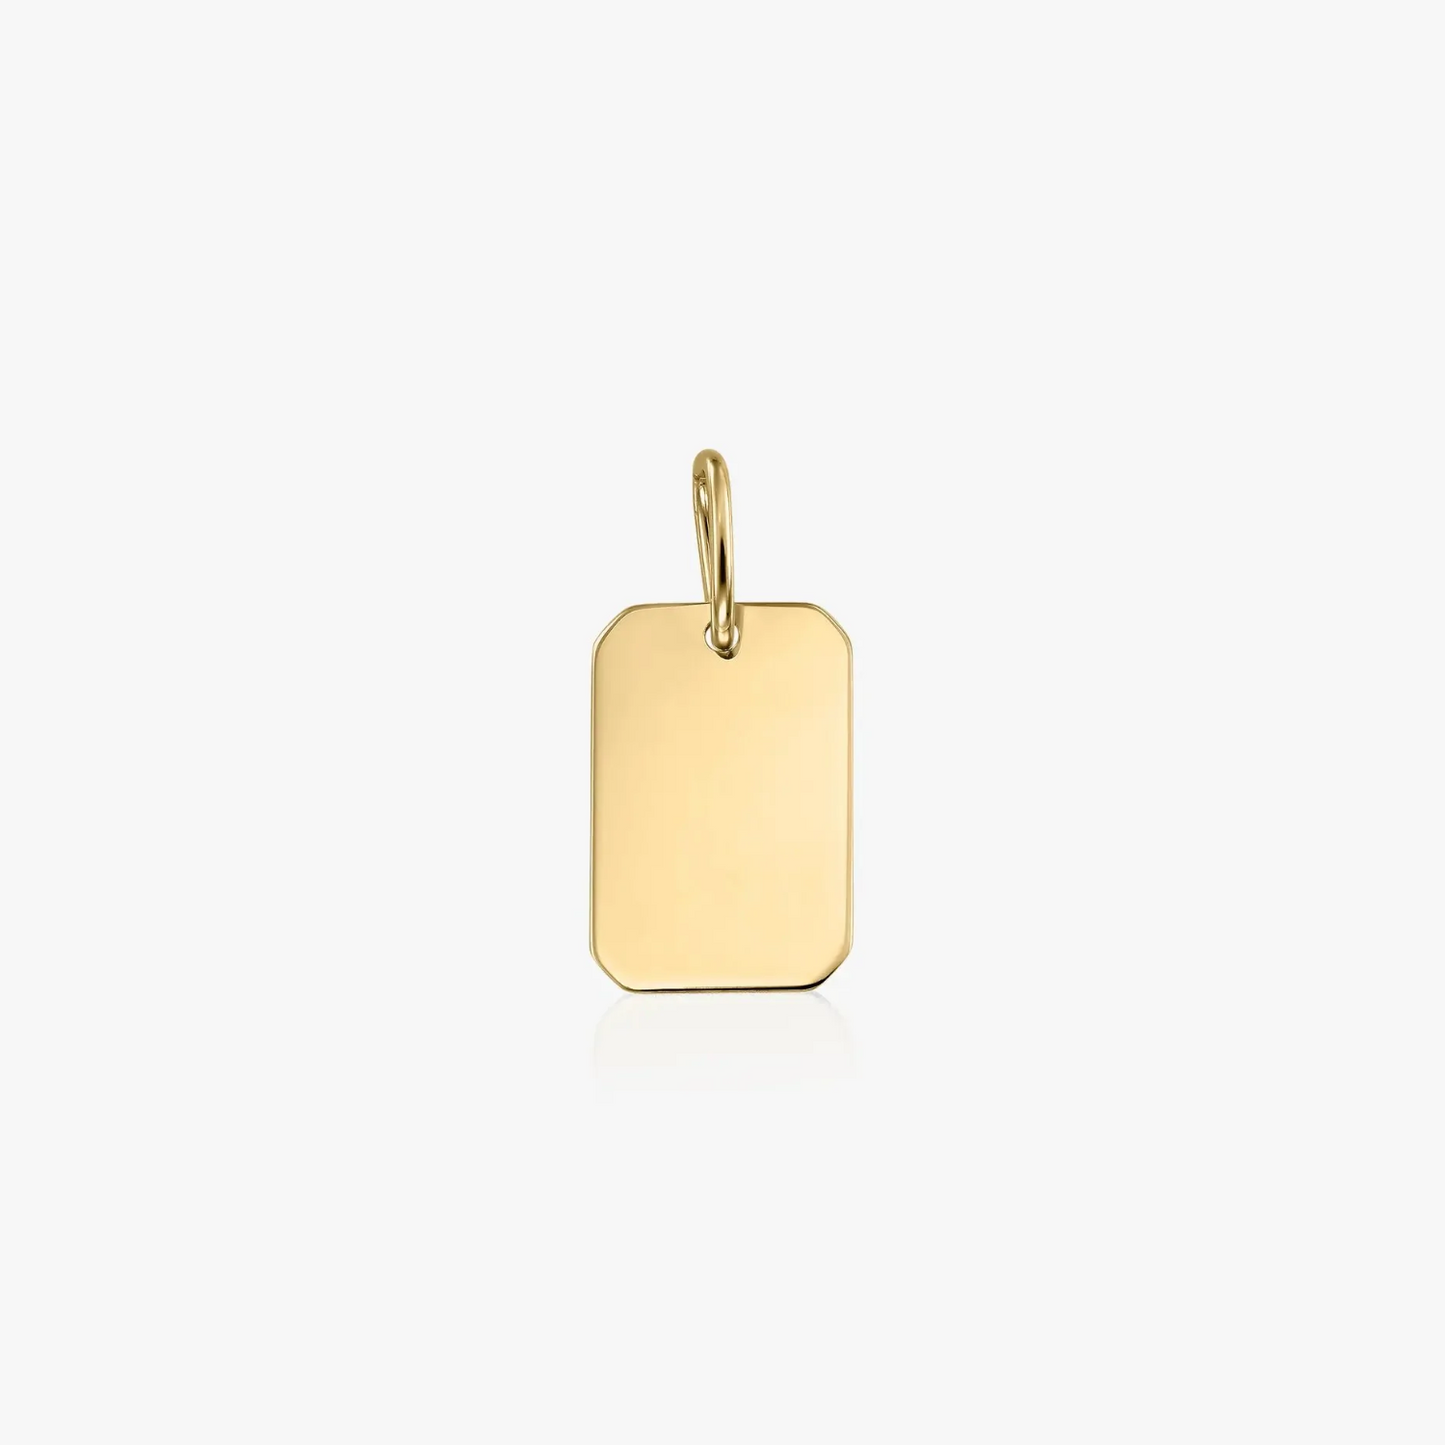 Rectangle gold pendant - engravable